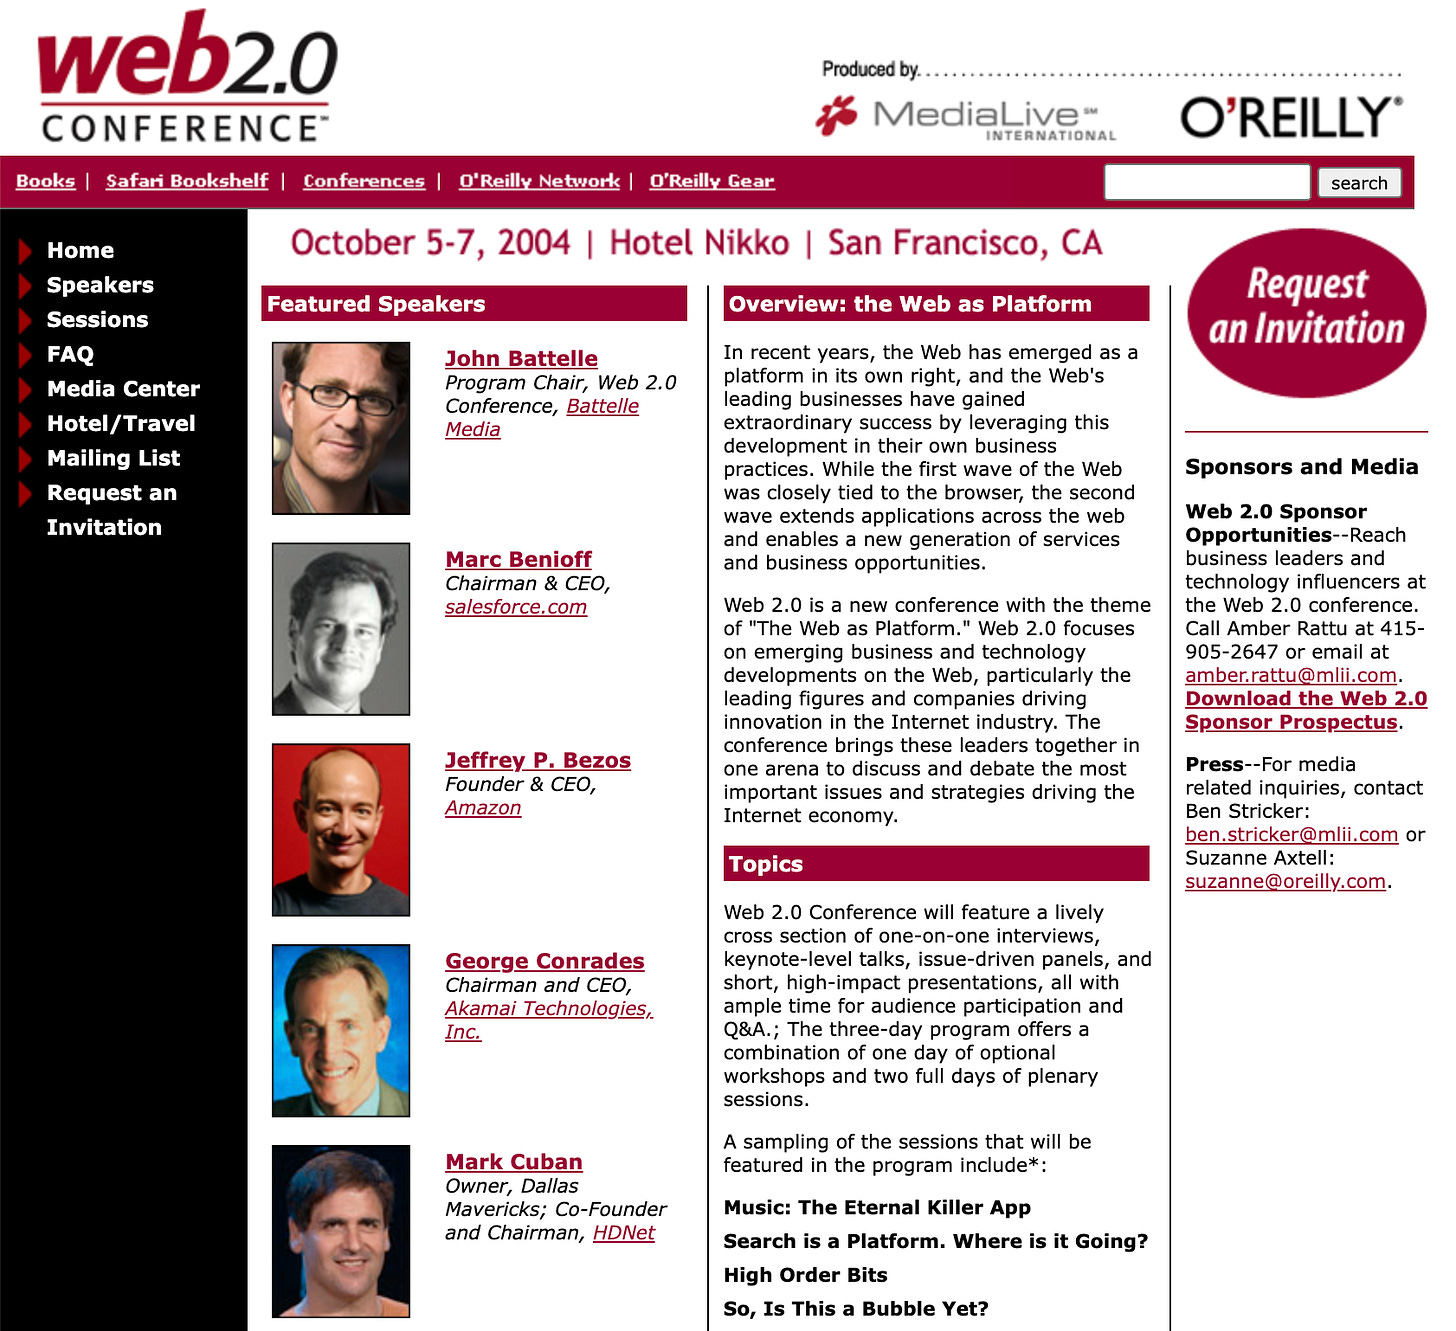 Web 2.0 Conference website, 2 June 2004